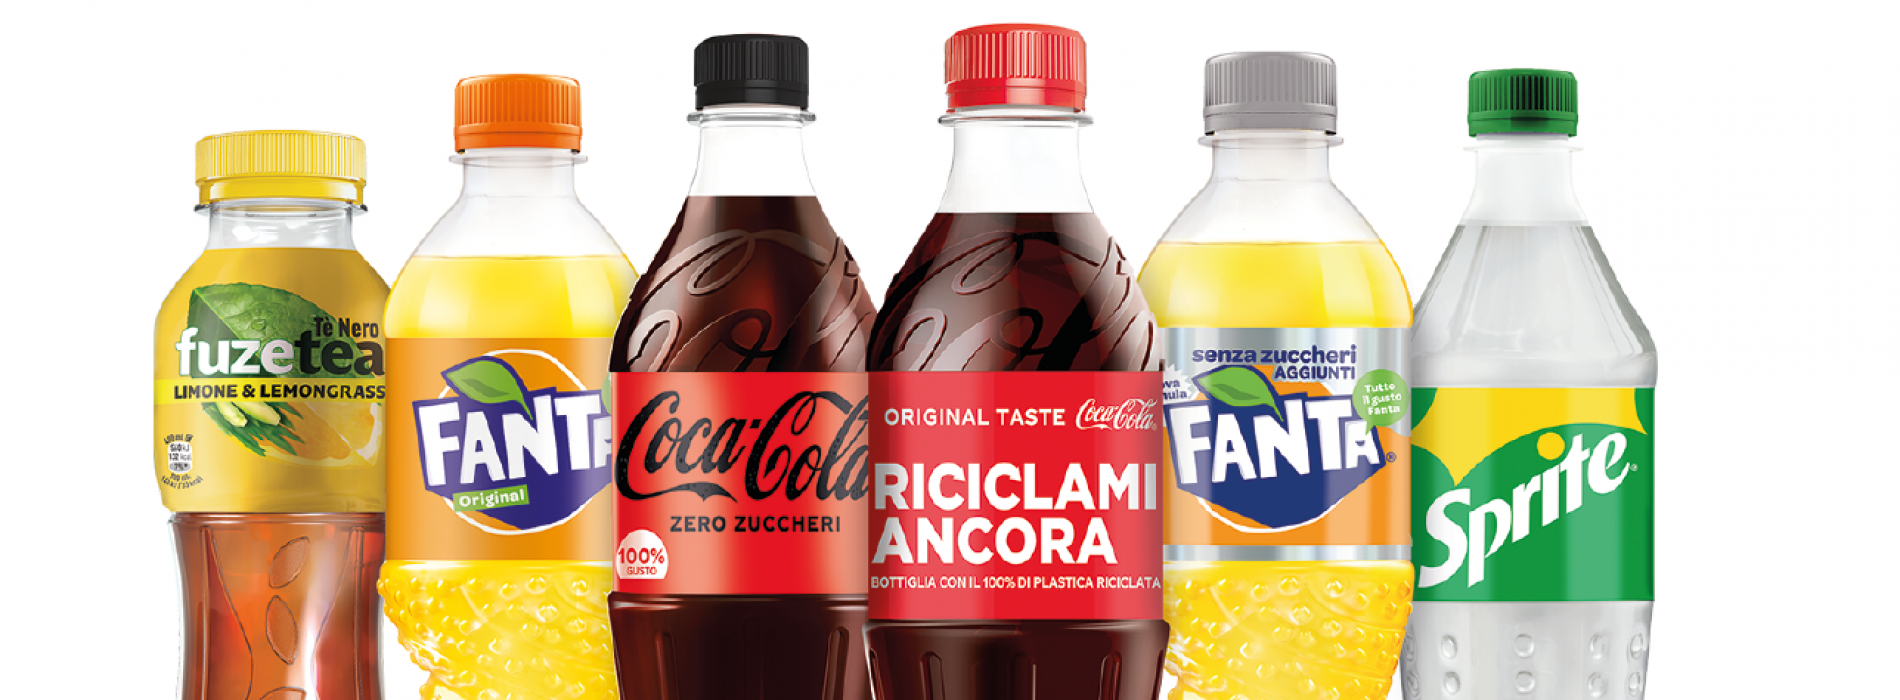 Coca-Cola, in Campania è una realtà con 1200 posti di lavoro